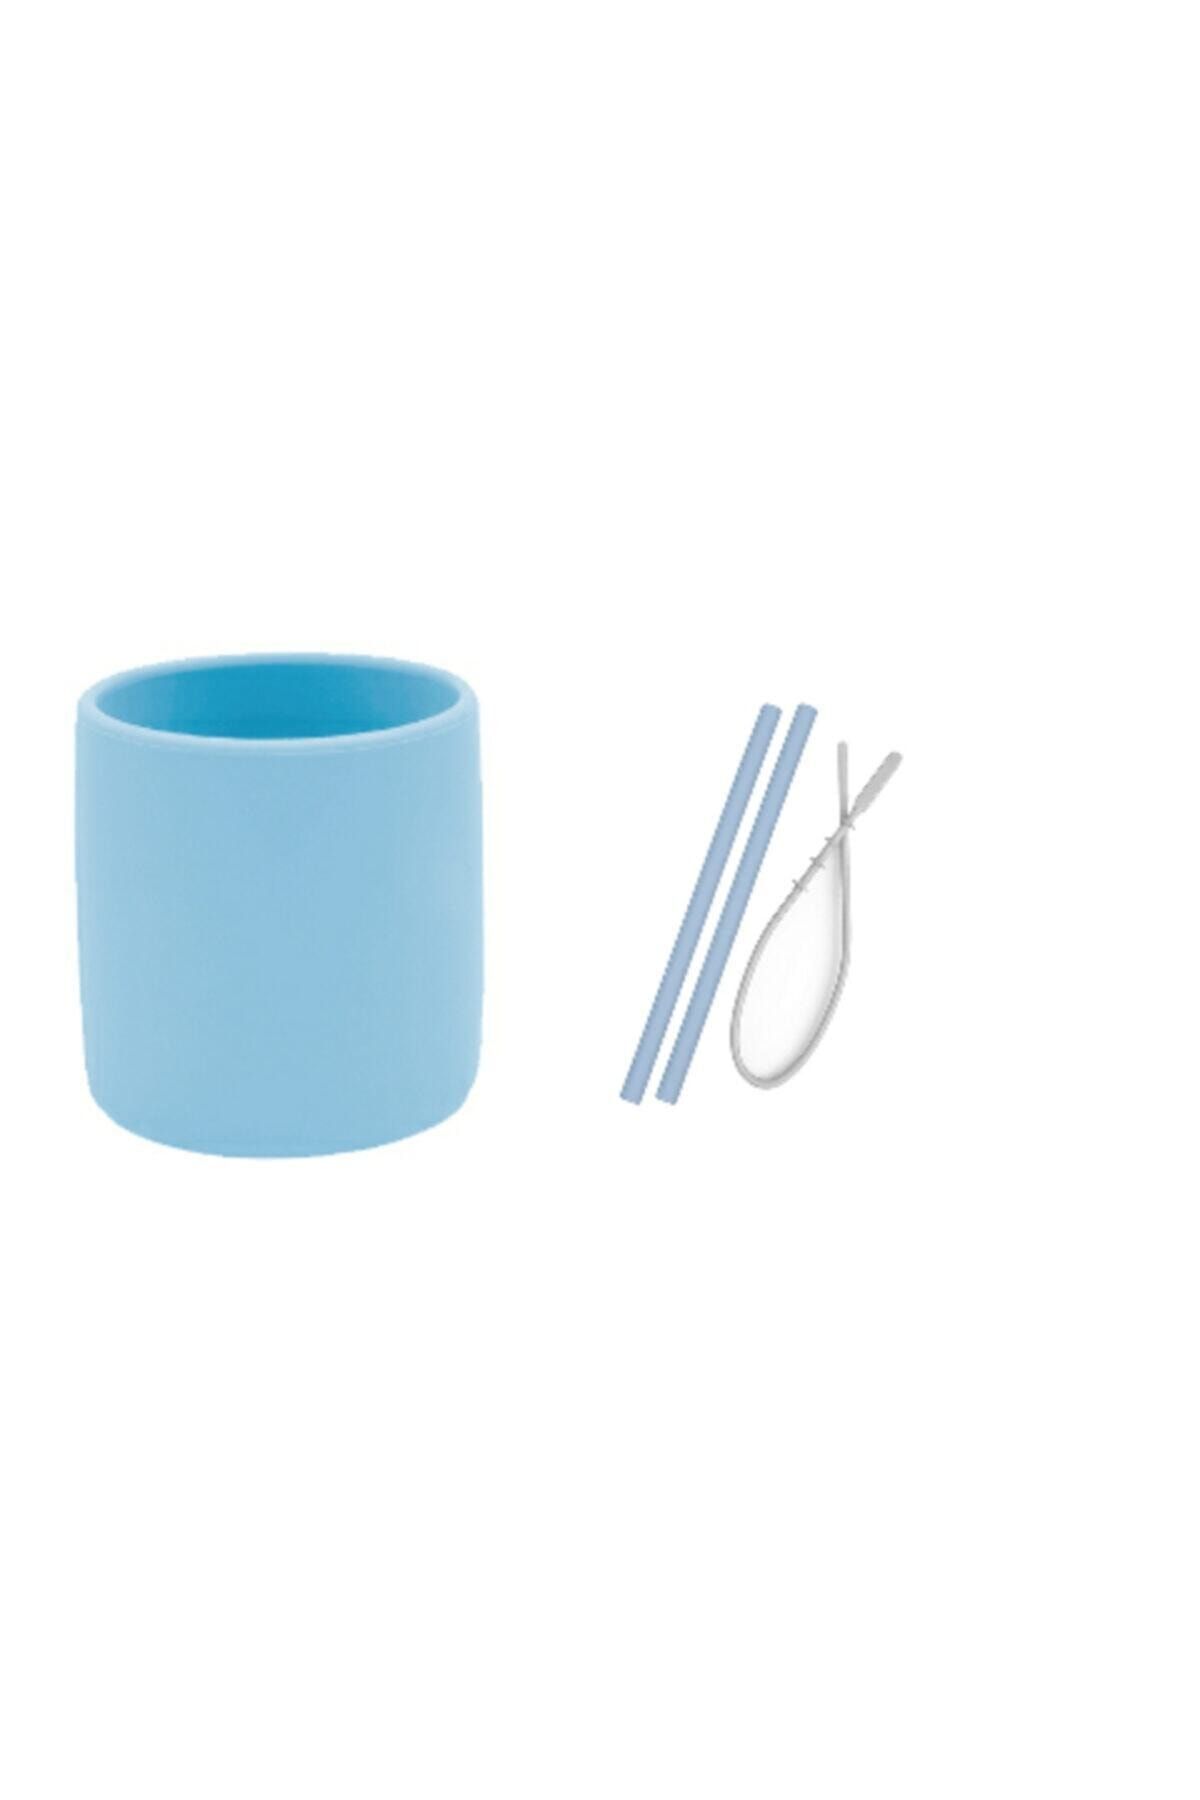 Oioi 3 Li Set Mavi (Silikon Bardak + 2 Li Silikon Pipet + Temizleyici Fırçası )